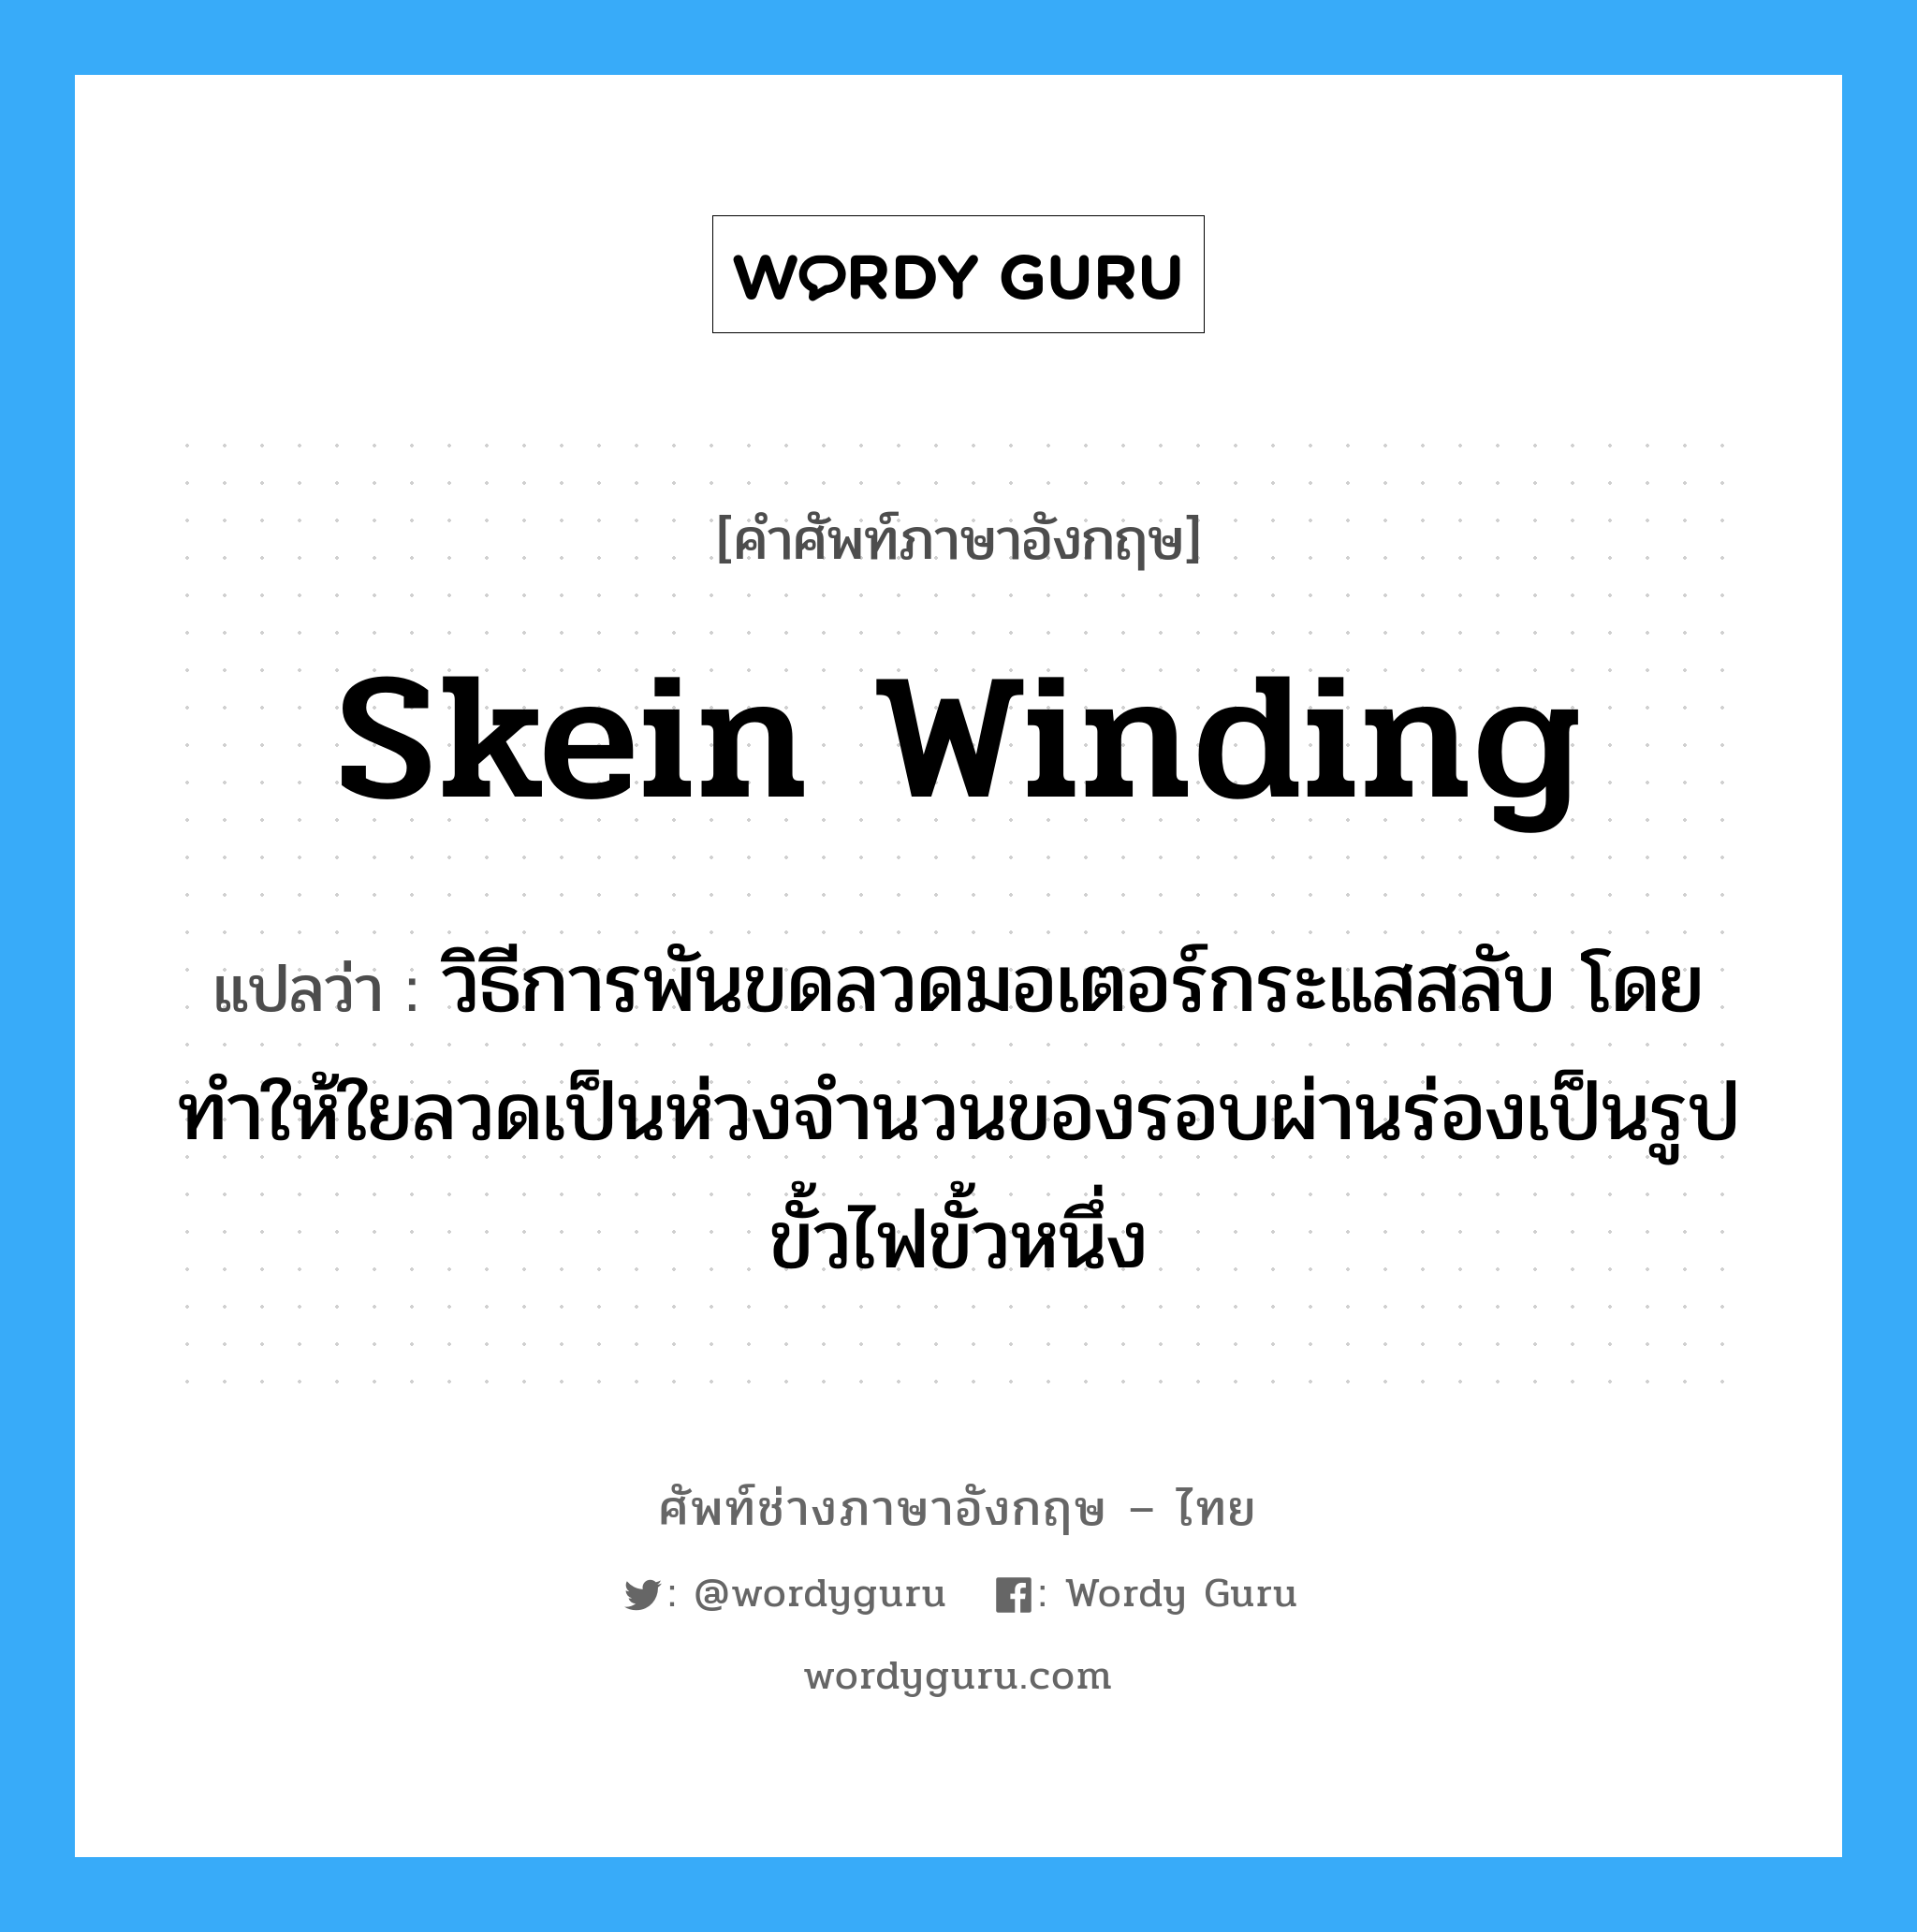 skein winding แปลว่า?, คำศัพท์ช่างภาษาอังกฤษ - ไทย skein winding คำศัพท์ภาษาอังกฤษ skein winding แปลว่า วิธีการพันขดลวดมอเตอร์กระแสสลับ โดยทำให้ใยลวดเป็นห่วงจำนวนของรอบผ่านร่องเป็นรูปขั้วไฟขั้วหนึ่ง